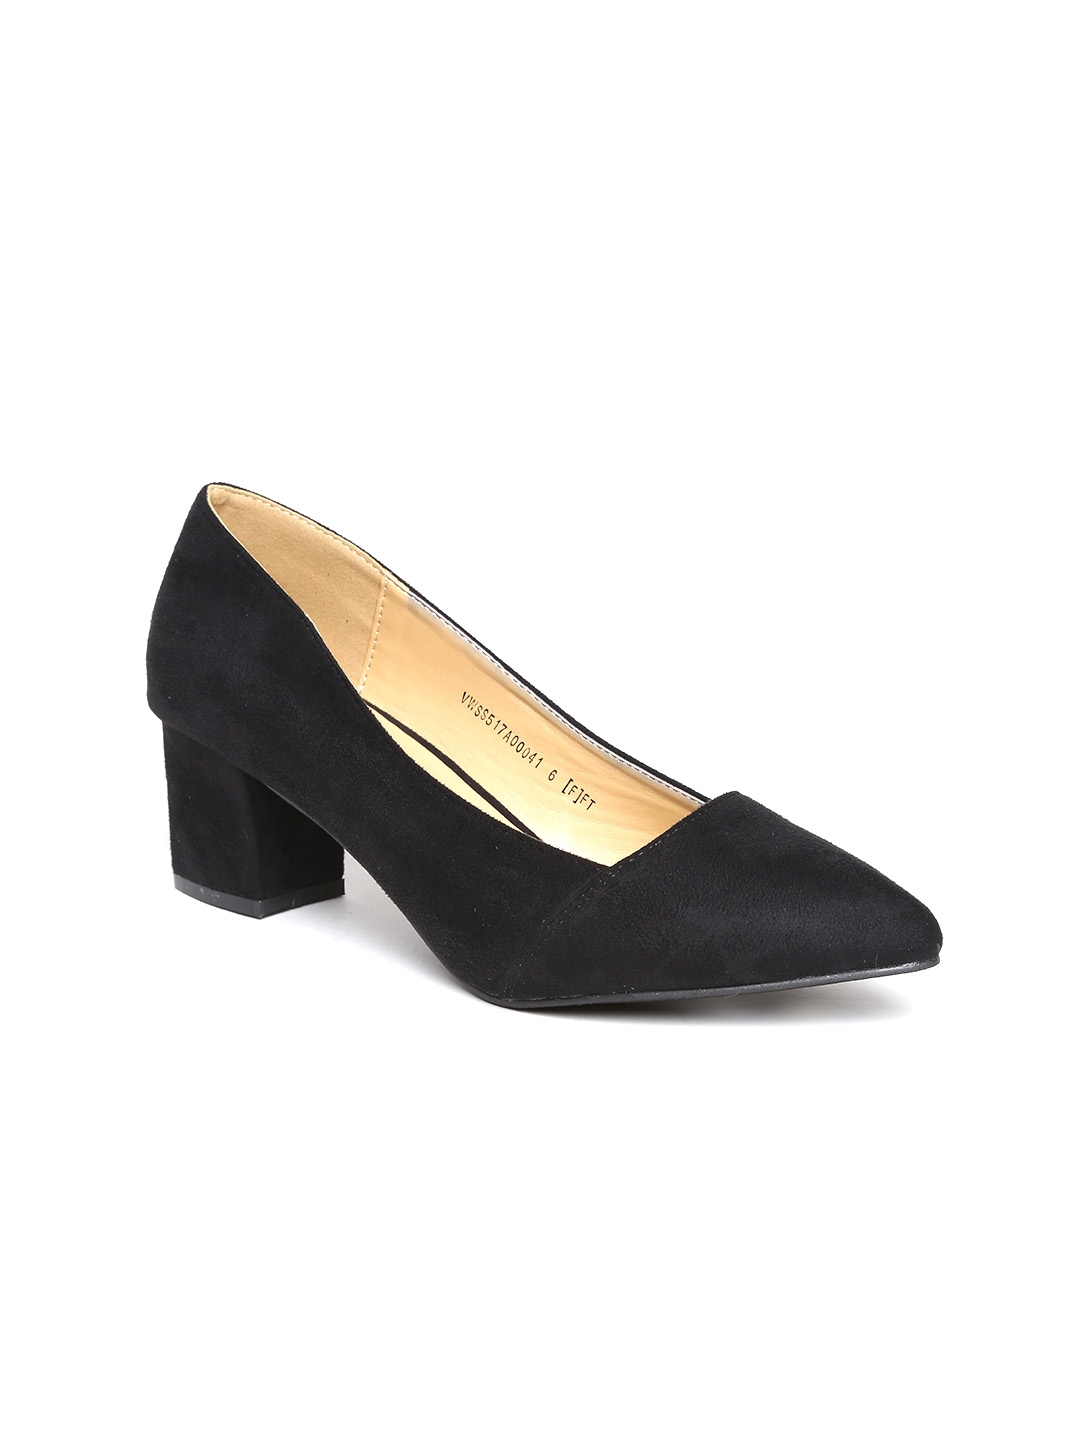 Buy Van Heusen Women Black Solid Pumps - Heels for Women 2088408 | Myntra